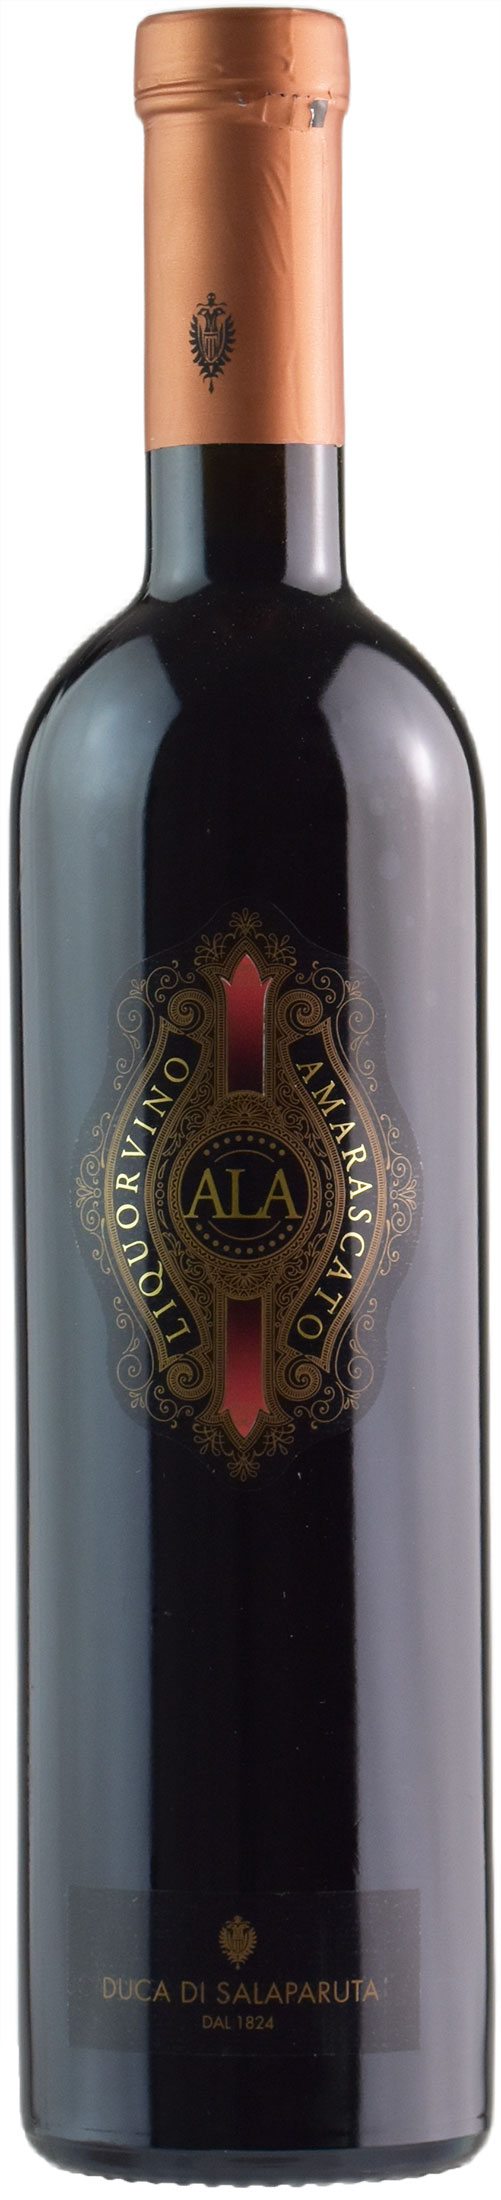 Duca di Salaparuta Antico Liquor Vino Amarascato Ala 0.5L